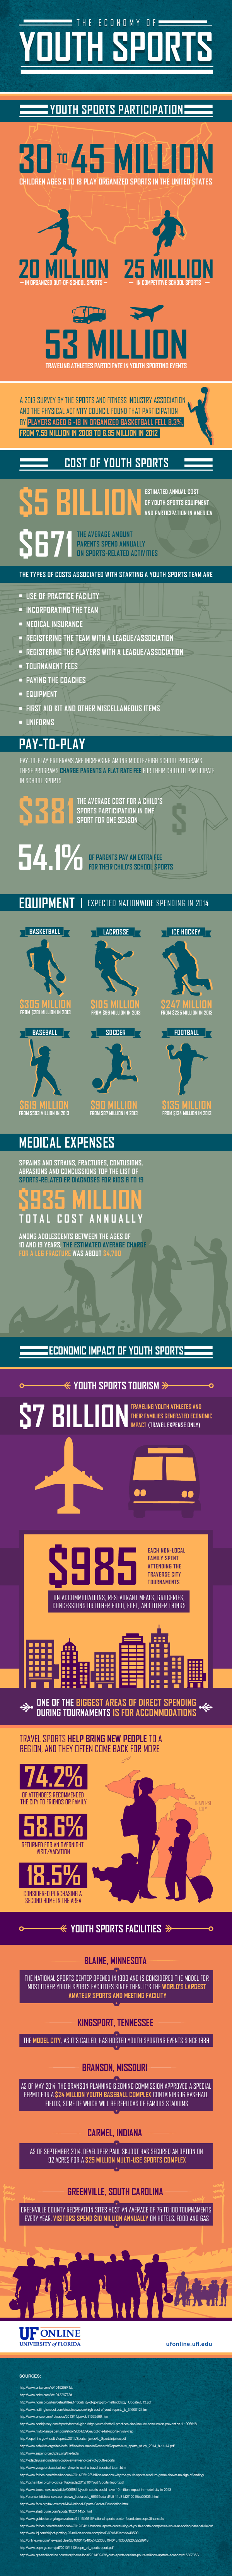 youth-sports-economy